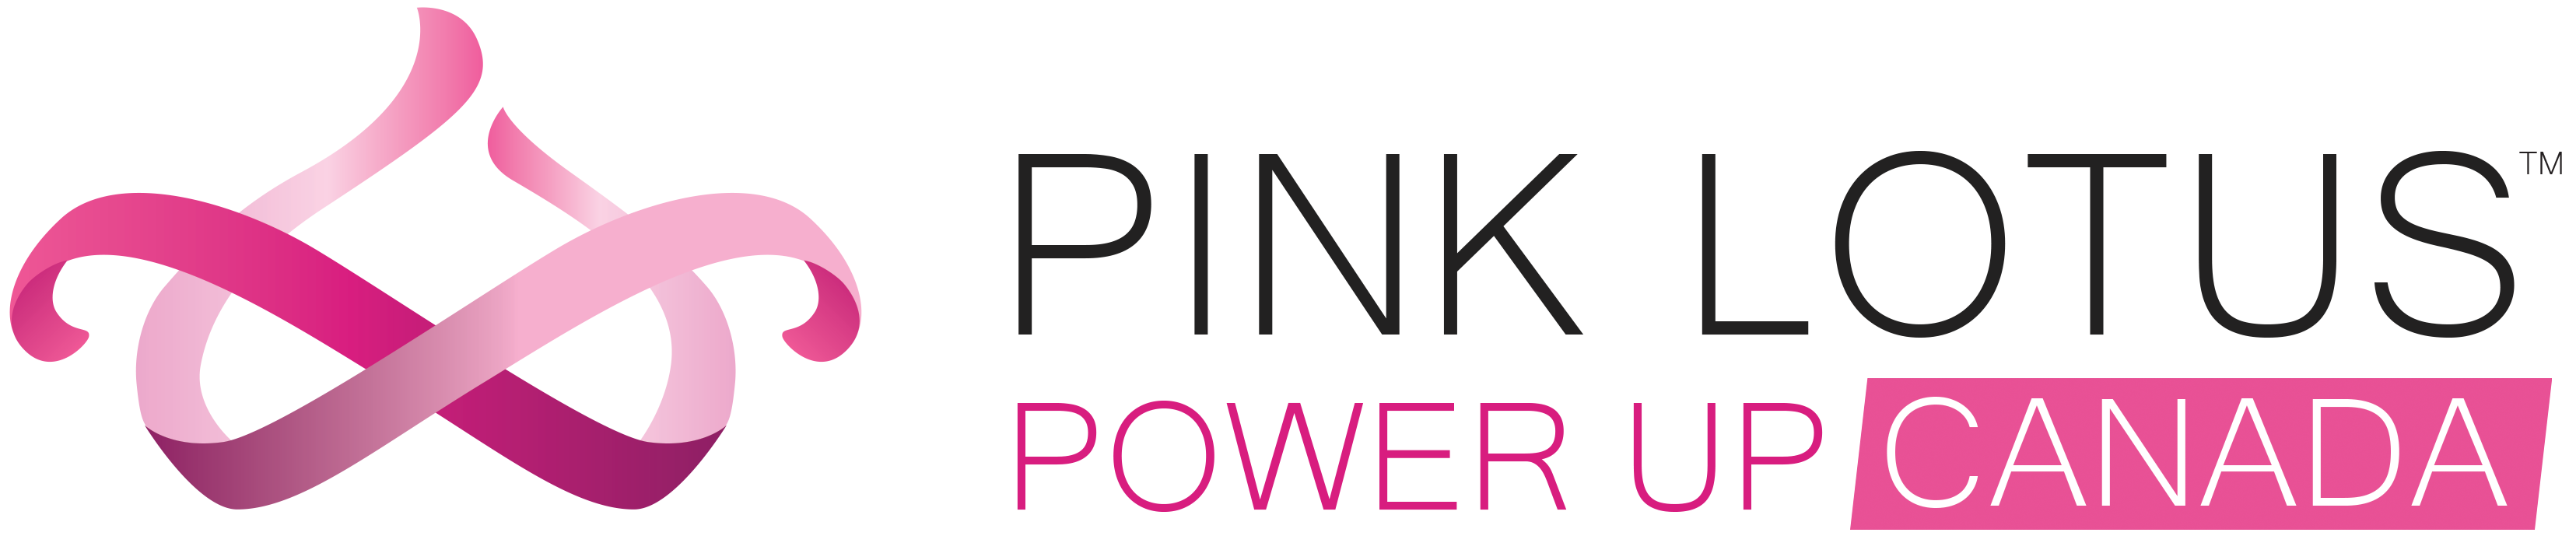 pink lotus power up canada logo